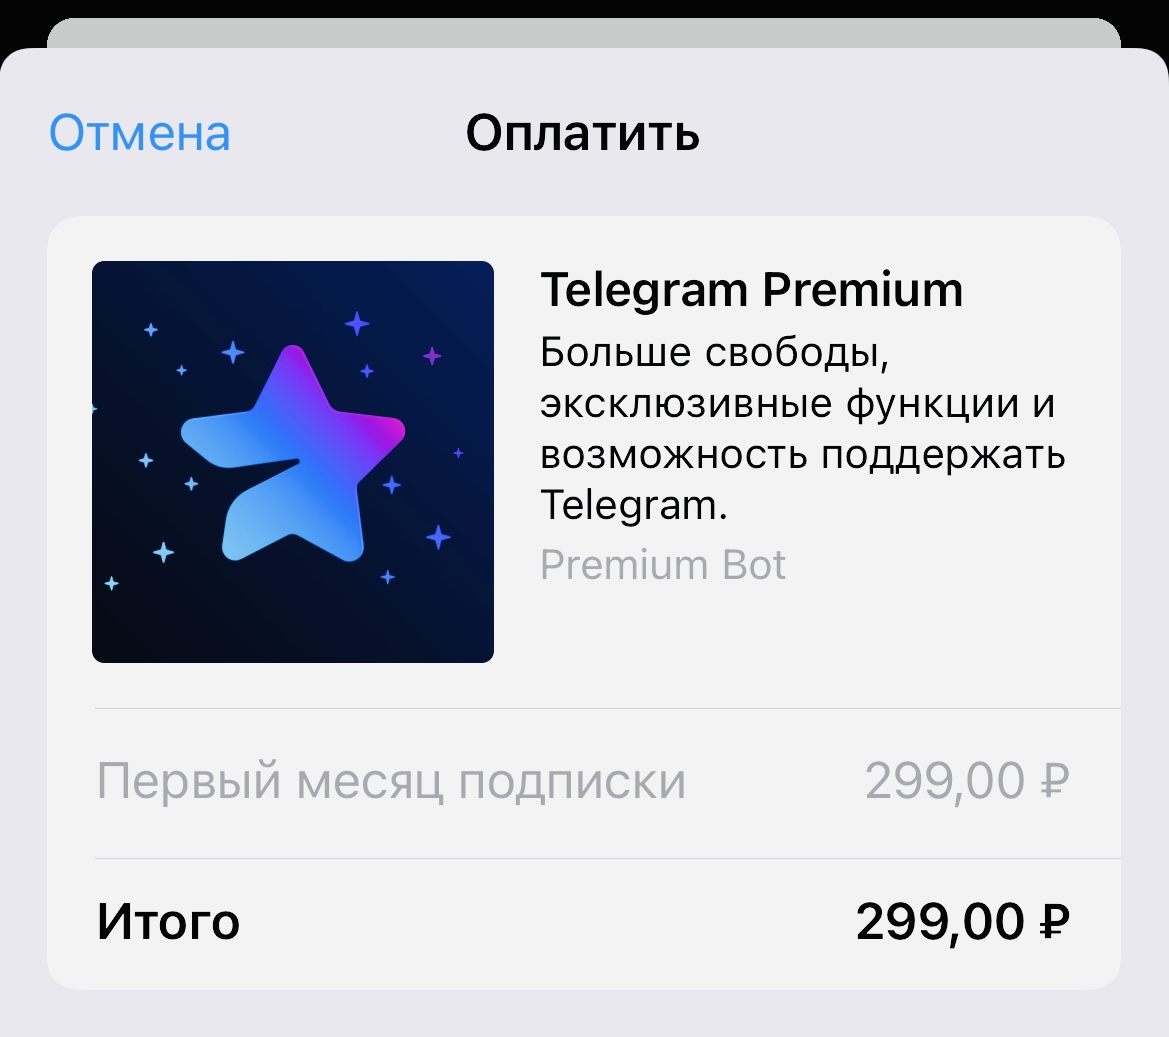 Стоимость Telegram Premium упала до 299 рублей в месяц, но только при покупке через бота